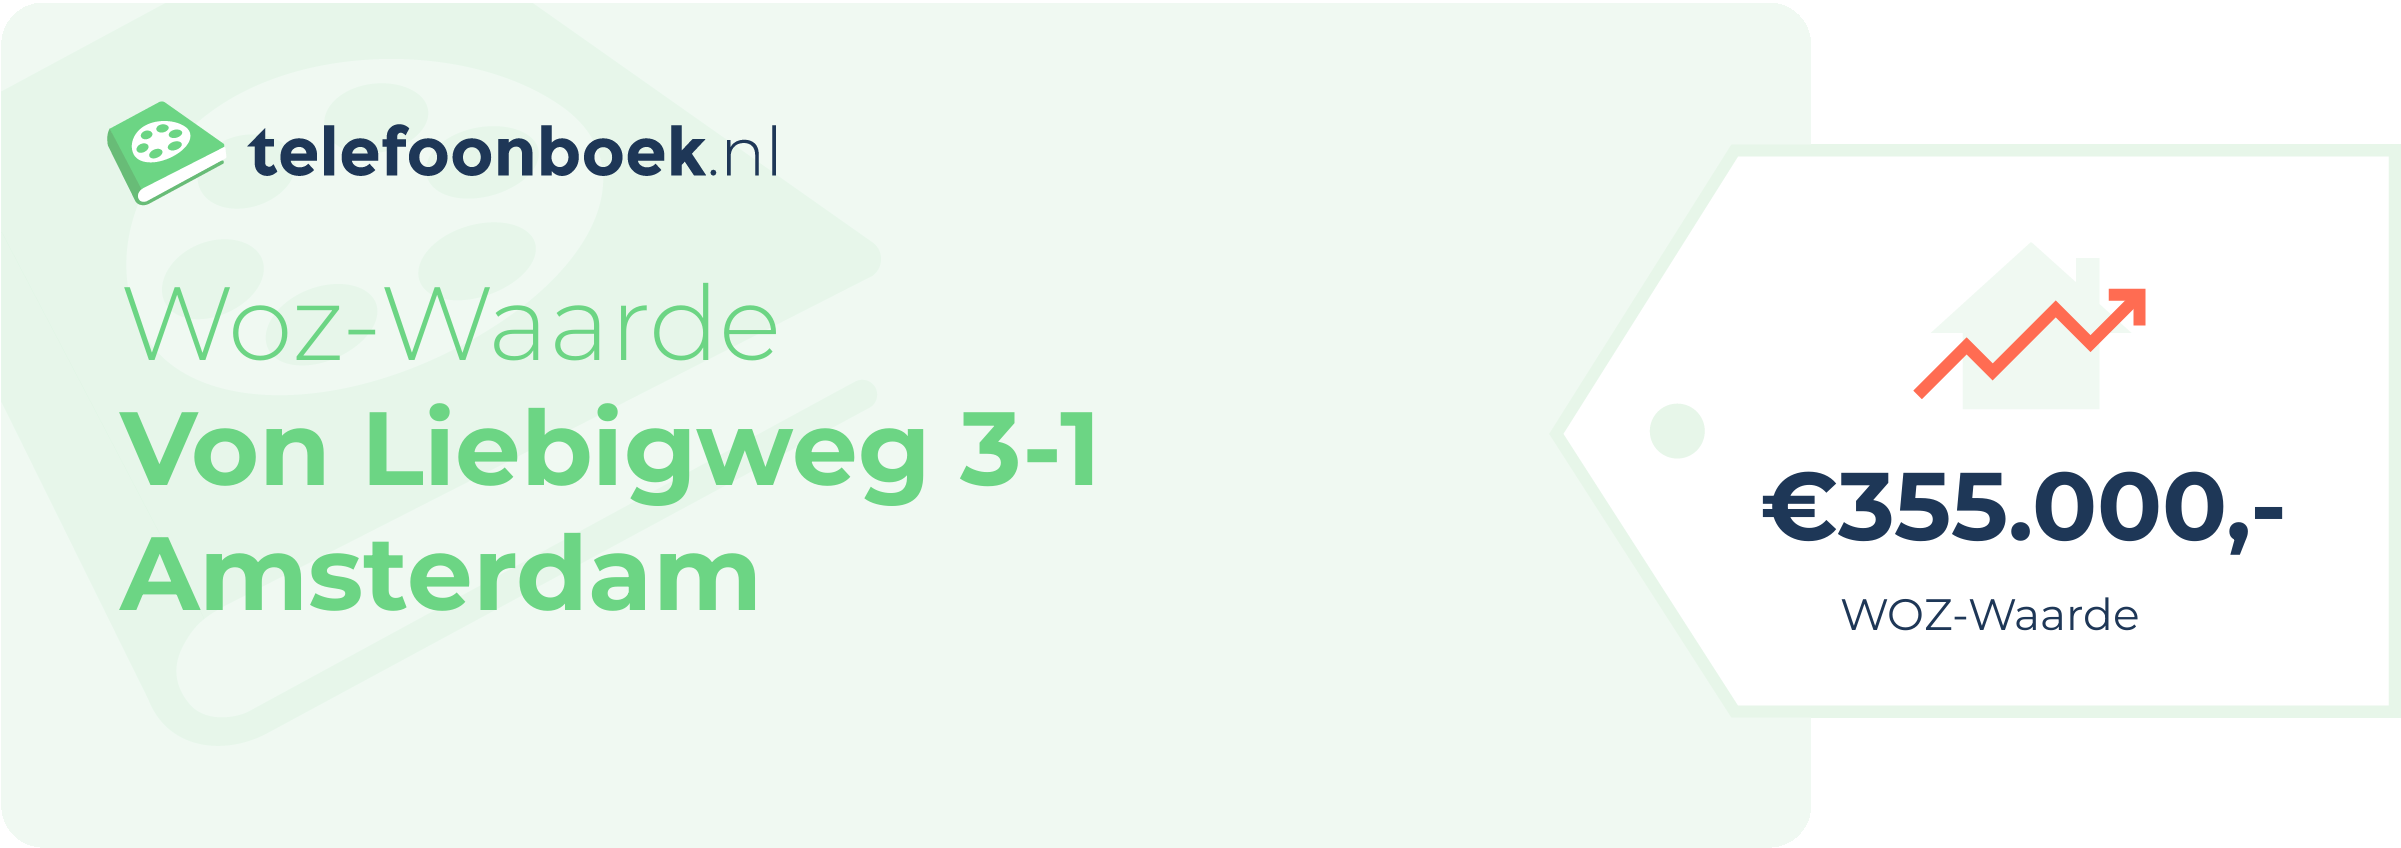 WOZ-waarde Von Liebigweg 3-1 Amsterdam